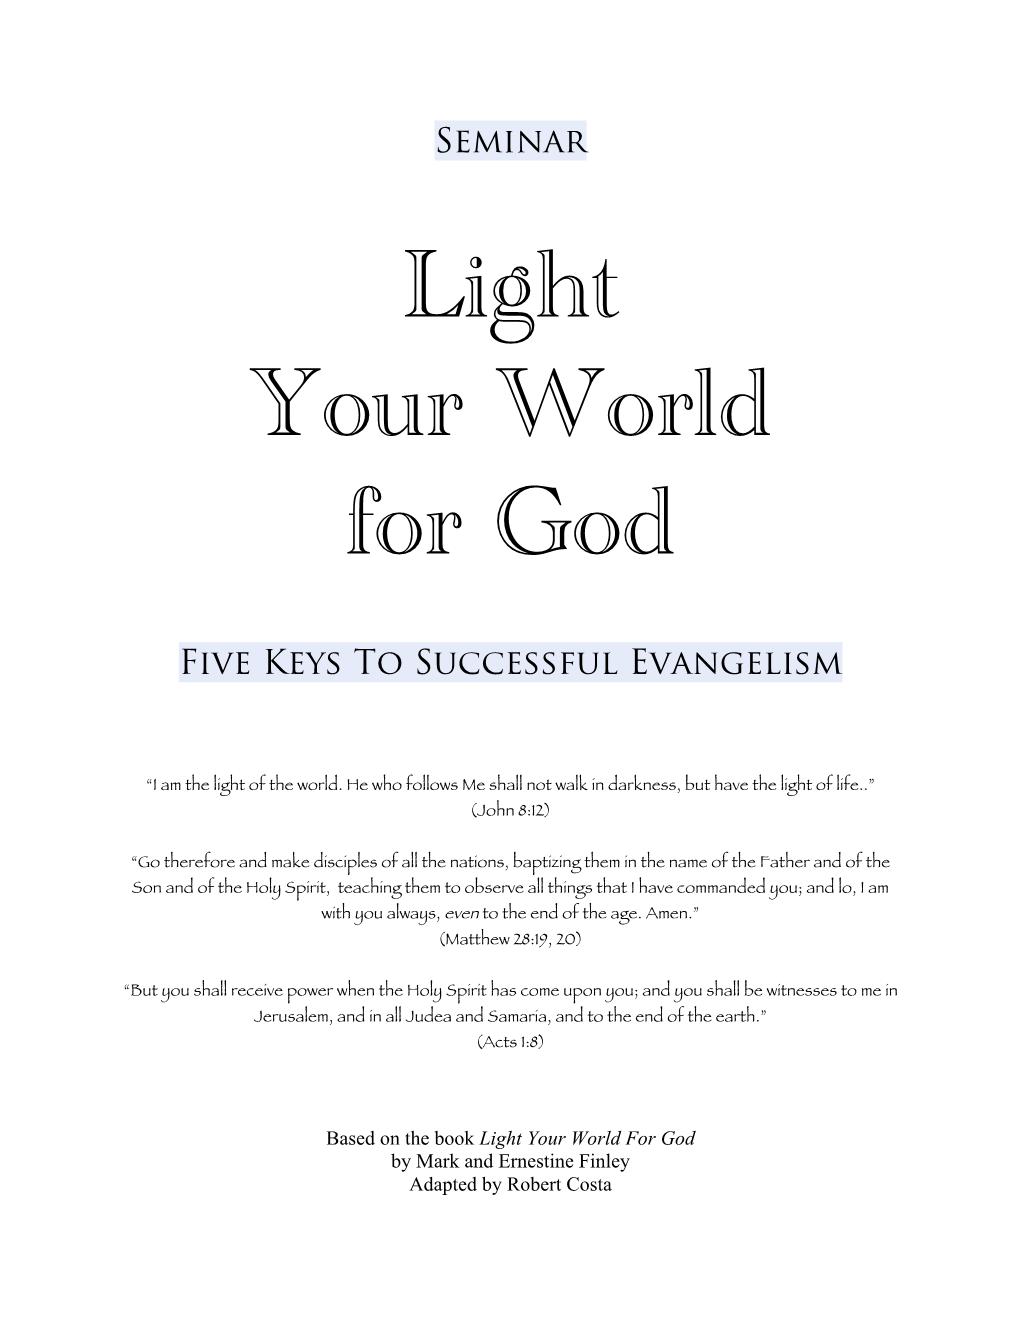 Light Your World for God